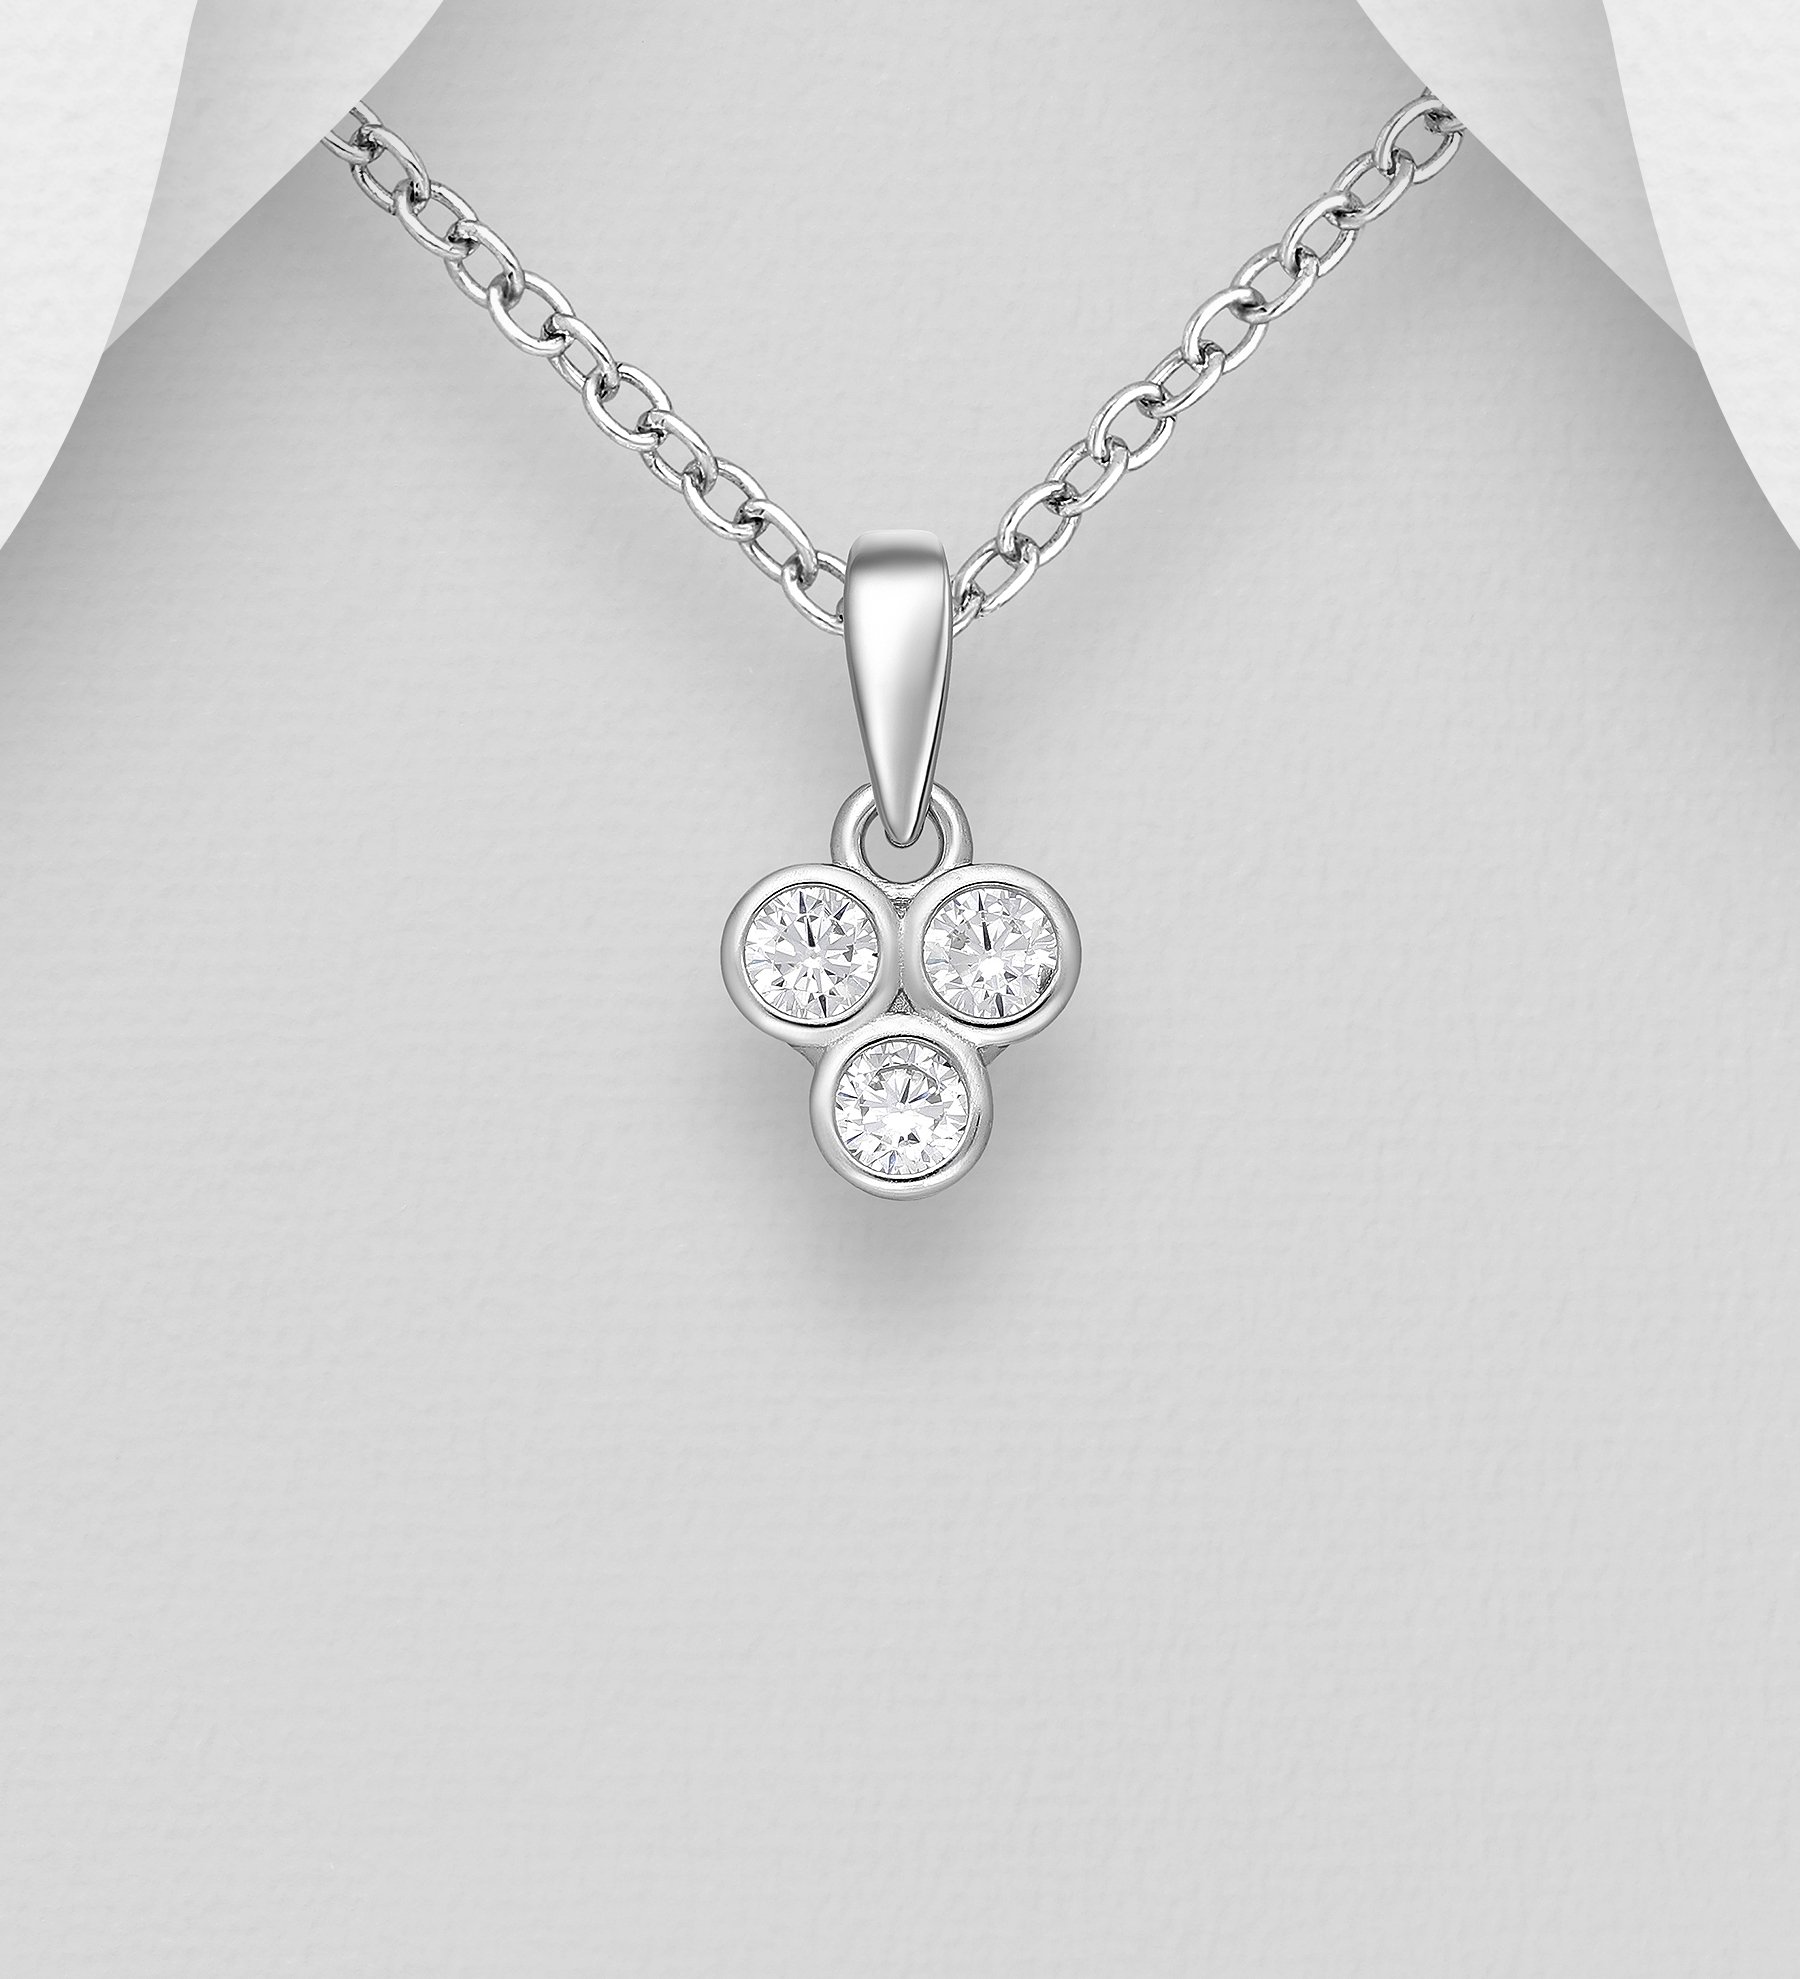 Silverhalsband hänge av tre runda Cubic Zirkonia stenar - vackert halsband till tjej/ dam i äkta 925 sterling silver